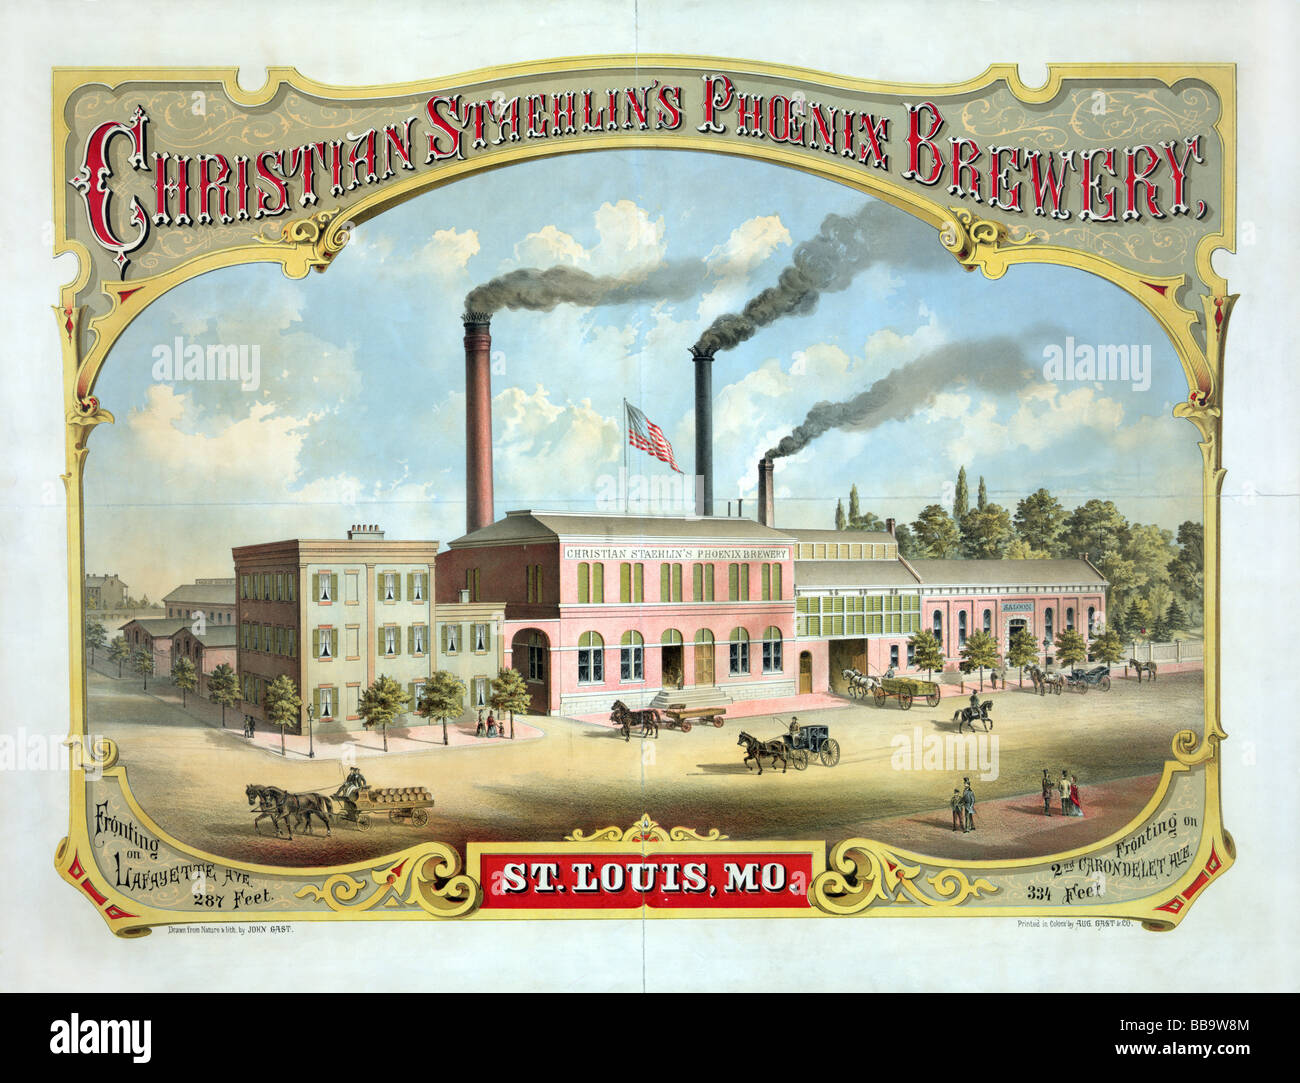 Fin du xixe siècle lithographie affiche publicitaire de Christian Staehlin's Phoenix Brewery, de St Louis, Missouri. Banque D'Images